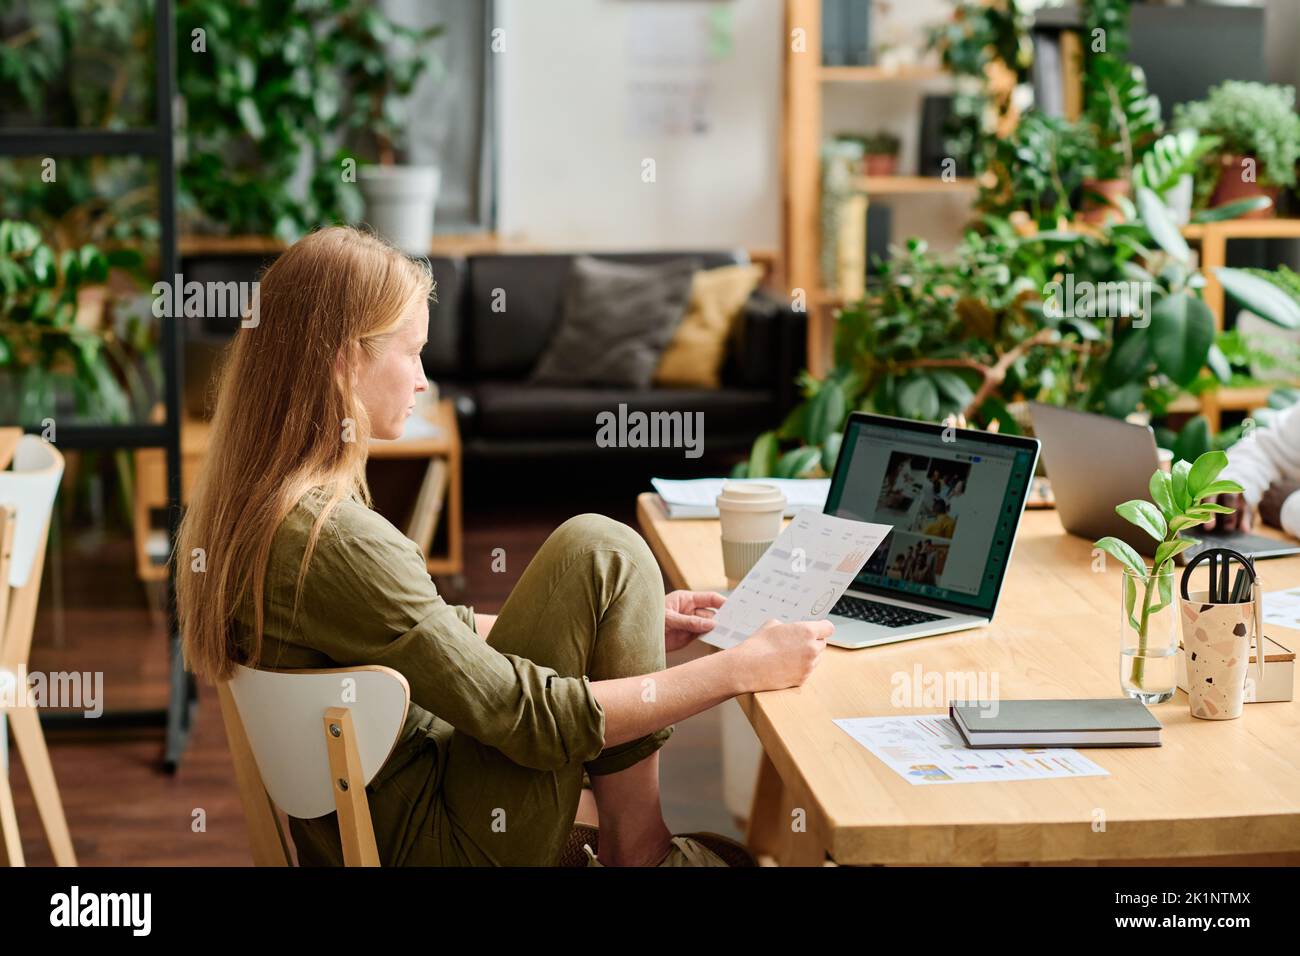 Junge kreative Geschäftsfrau oder Designerin, die Dokumente mit Bildern auf dem Laptop-Bildschirm sieht, während sie am Arbeitsplatz im Büro sitzt Stockfoto